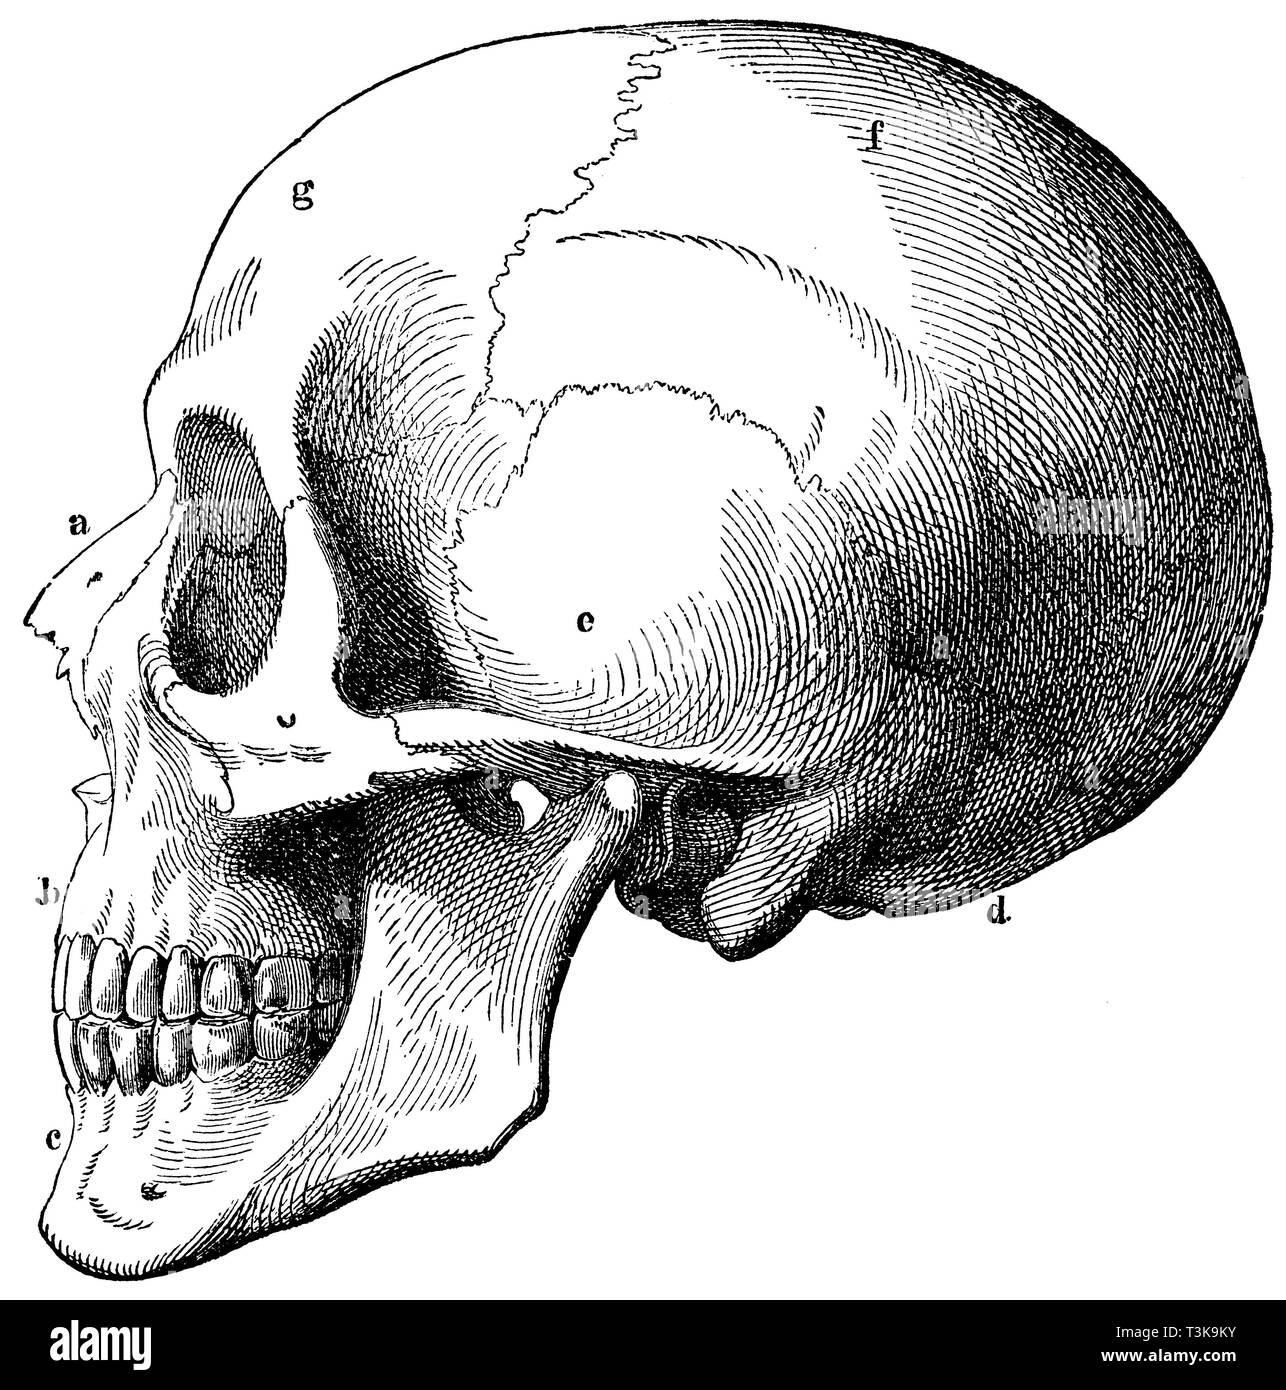 Cranio umano. a) osso nasale, b) ganascia superiore, c) la ganascia inferiore, d) osso occipitale, e) osso temporale, f) osso parietale, d) osso frontale., anonym 1877 Foto Stock